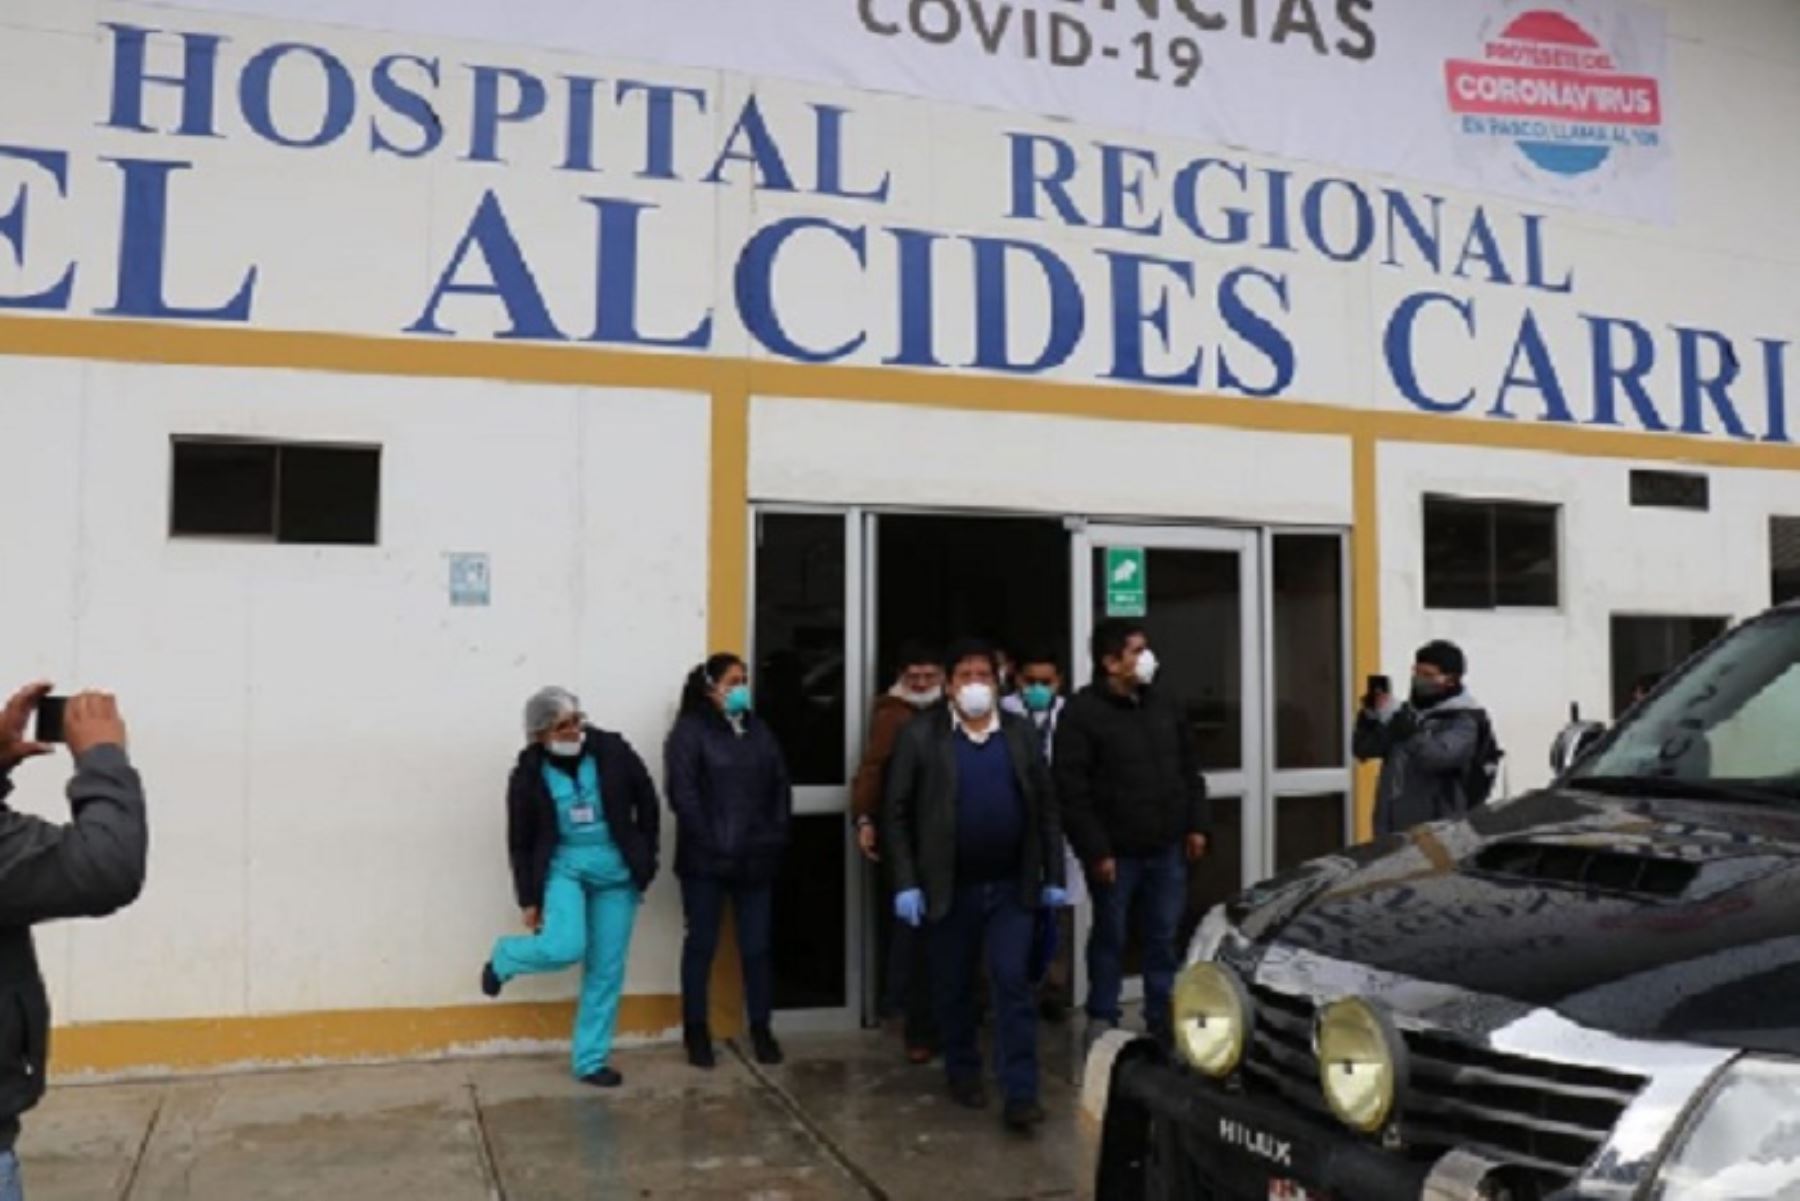 Gobernador regional de Pasco, Pedro Ubaldo, en su recorrido evaluó las acciones que se desarrollaron para implementar dicho nosocomio, con insumos y equipos, para estar preparados ante esta pandemia.